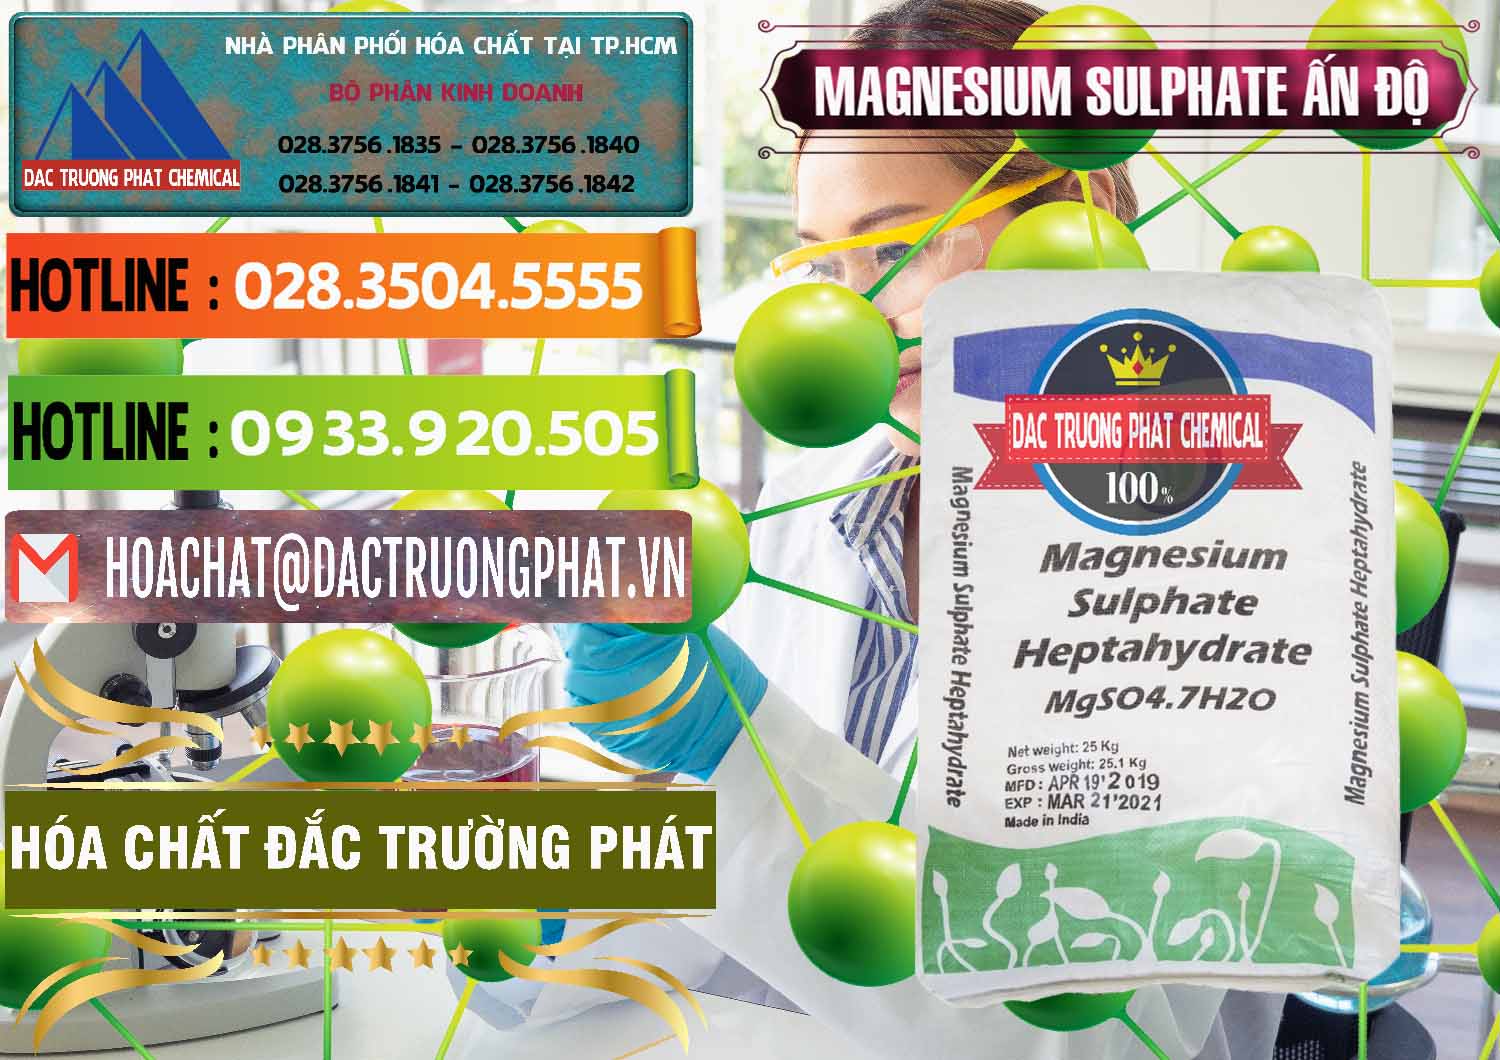 Đơn vị cung cấp _ bán MGSO4.7H2O – Magnesium Sulphate Heptahydrate Ấn Độ India - 0362 - Đơn vị cung cấp & bán hóa chất tại TP.HCM - cungcaphoachat.com.vn